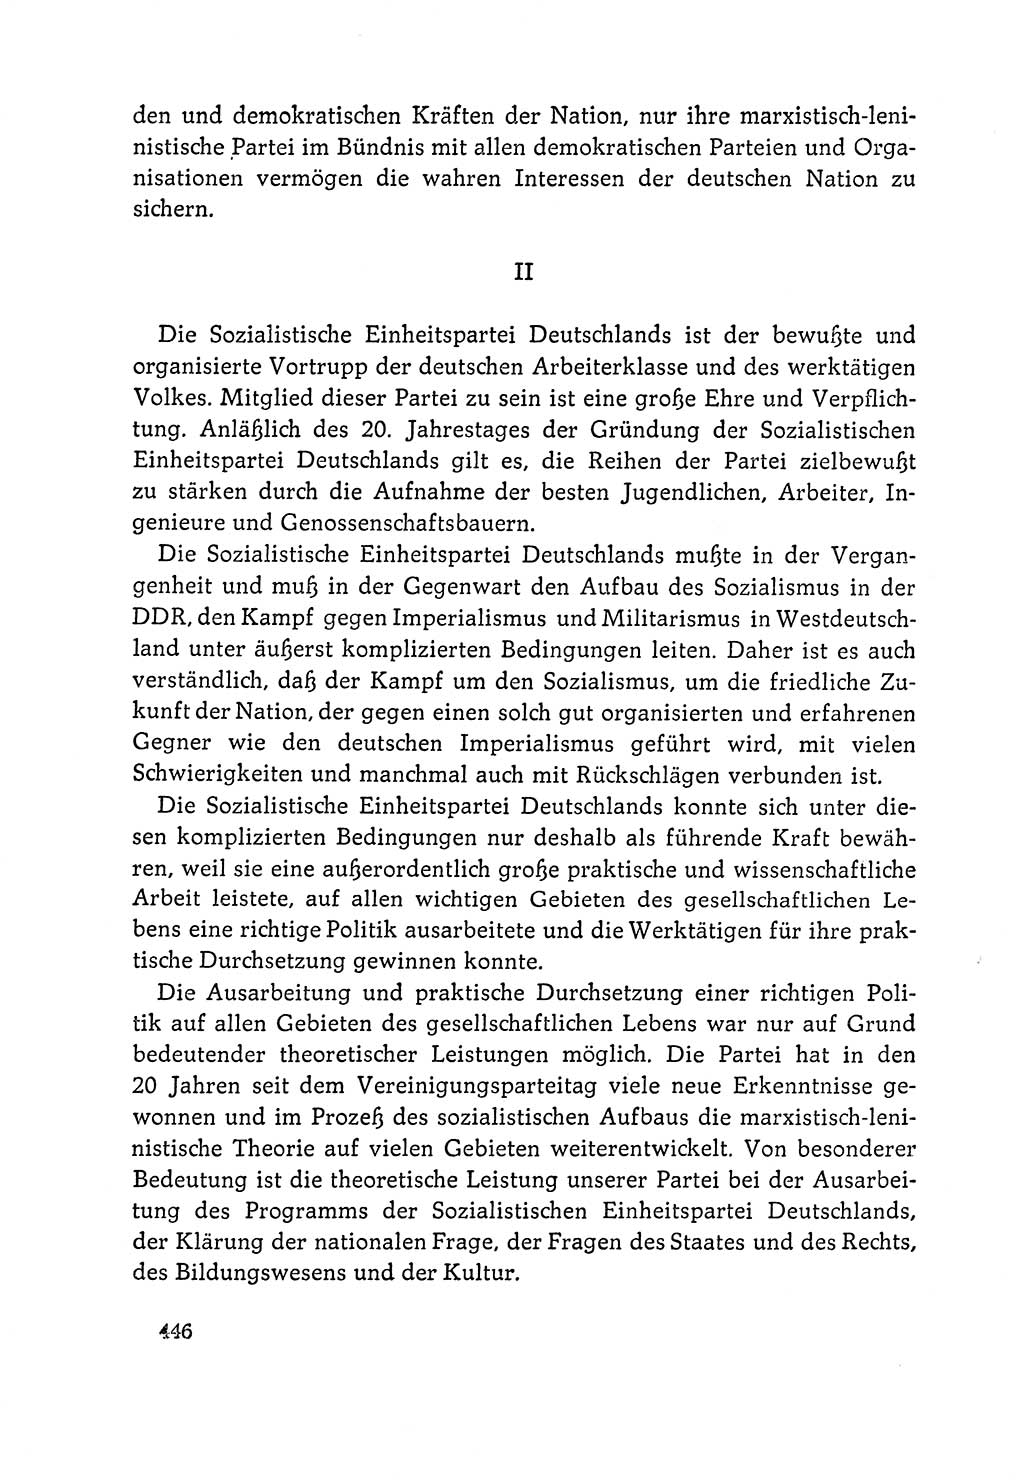 Dokumente der Sozialistischen Einheitspartei Deutschlands (SED) [Deutsche Demokratische Republik (DDR)] 1964-1965, Seite 446 (Dok. SED DDR 1964-1965, S. 446)